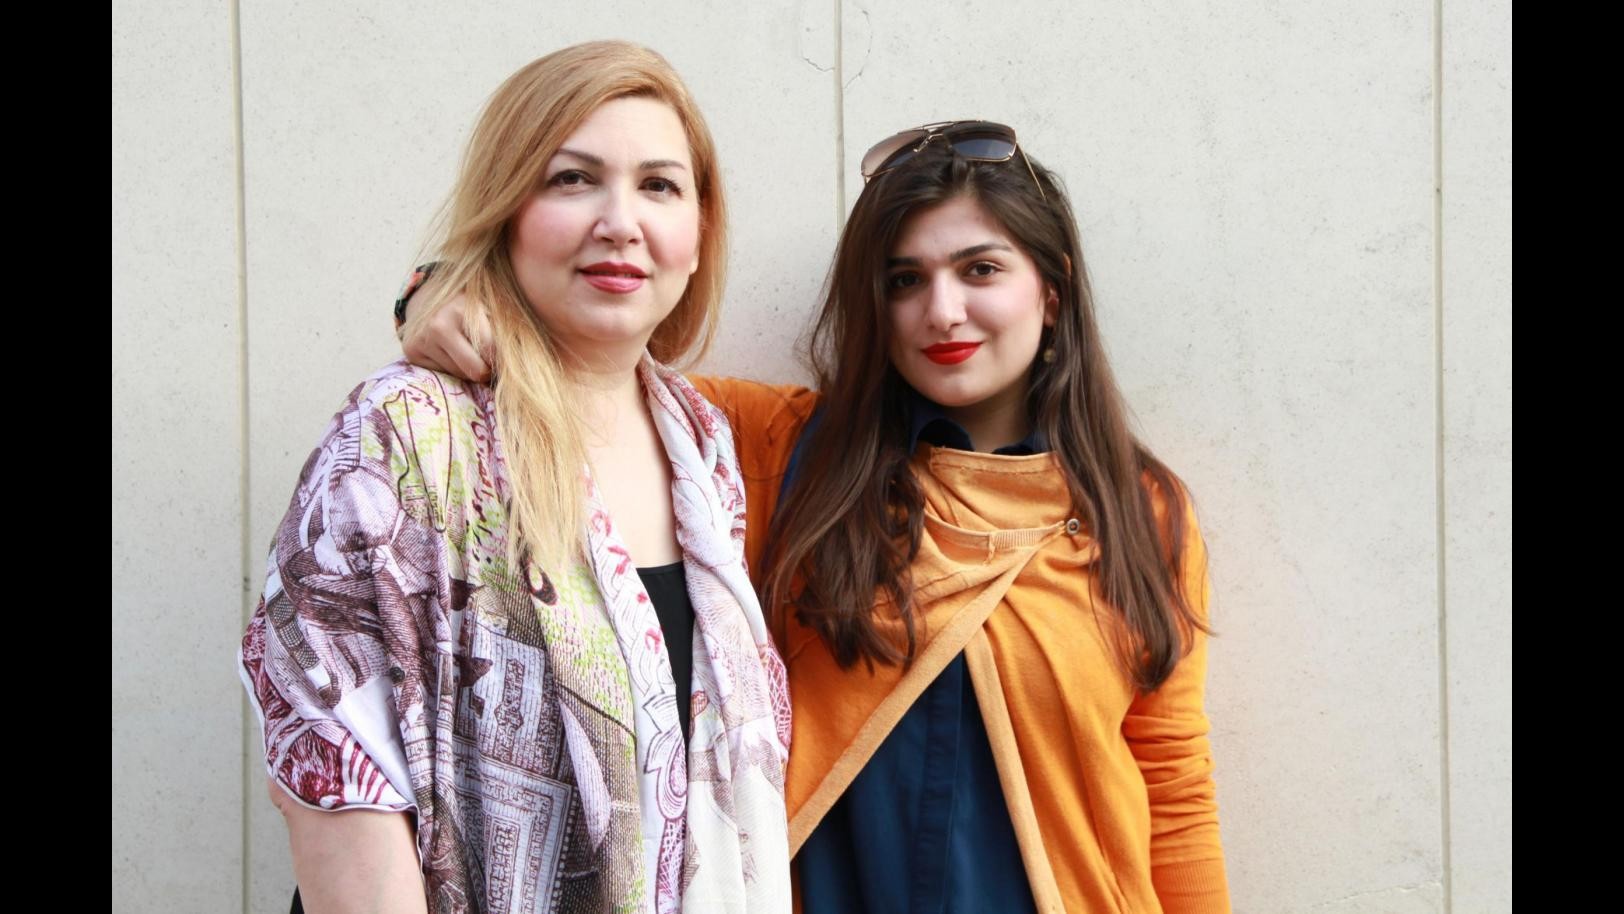 Iran, andò a partita volley: un anno di carcere a 25enne britannica